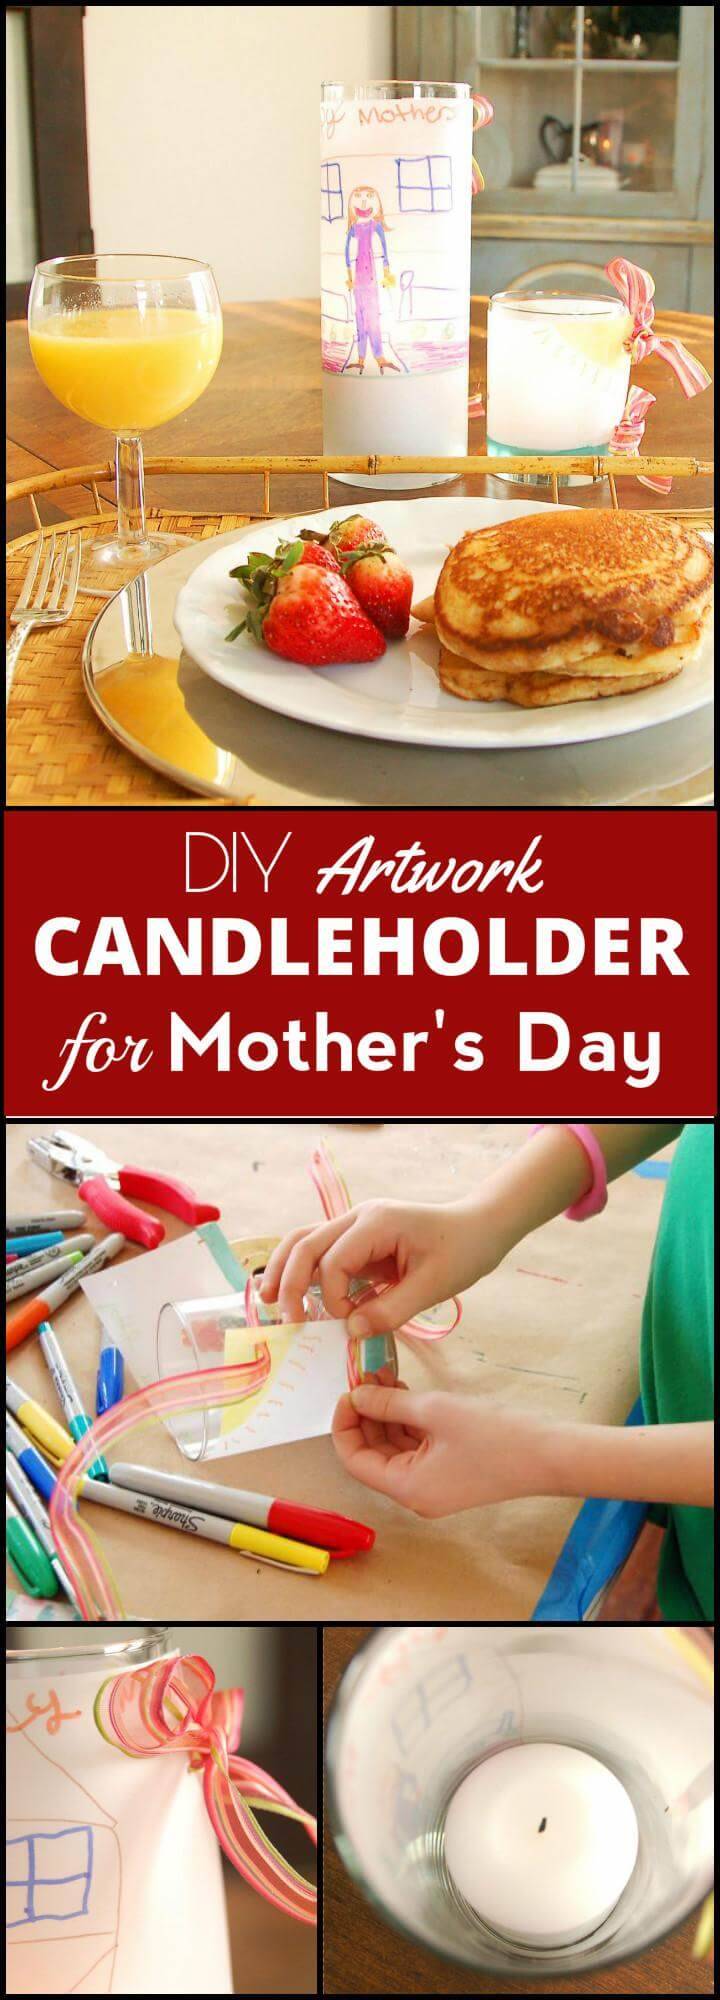 DIY artwork candleholder for Mother's Day